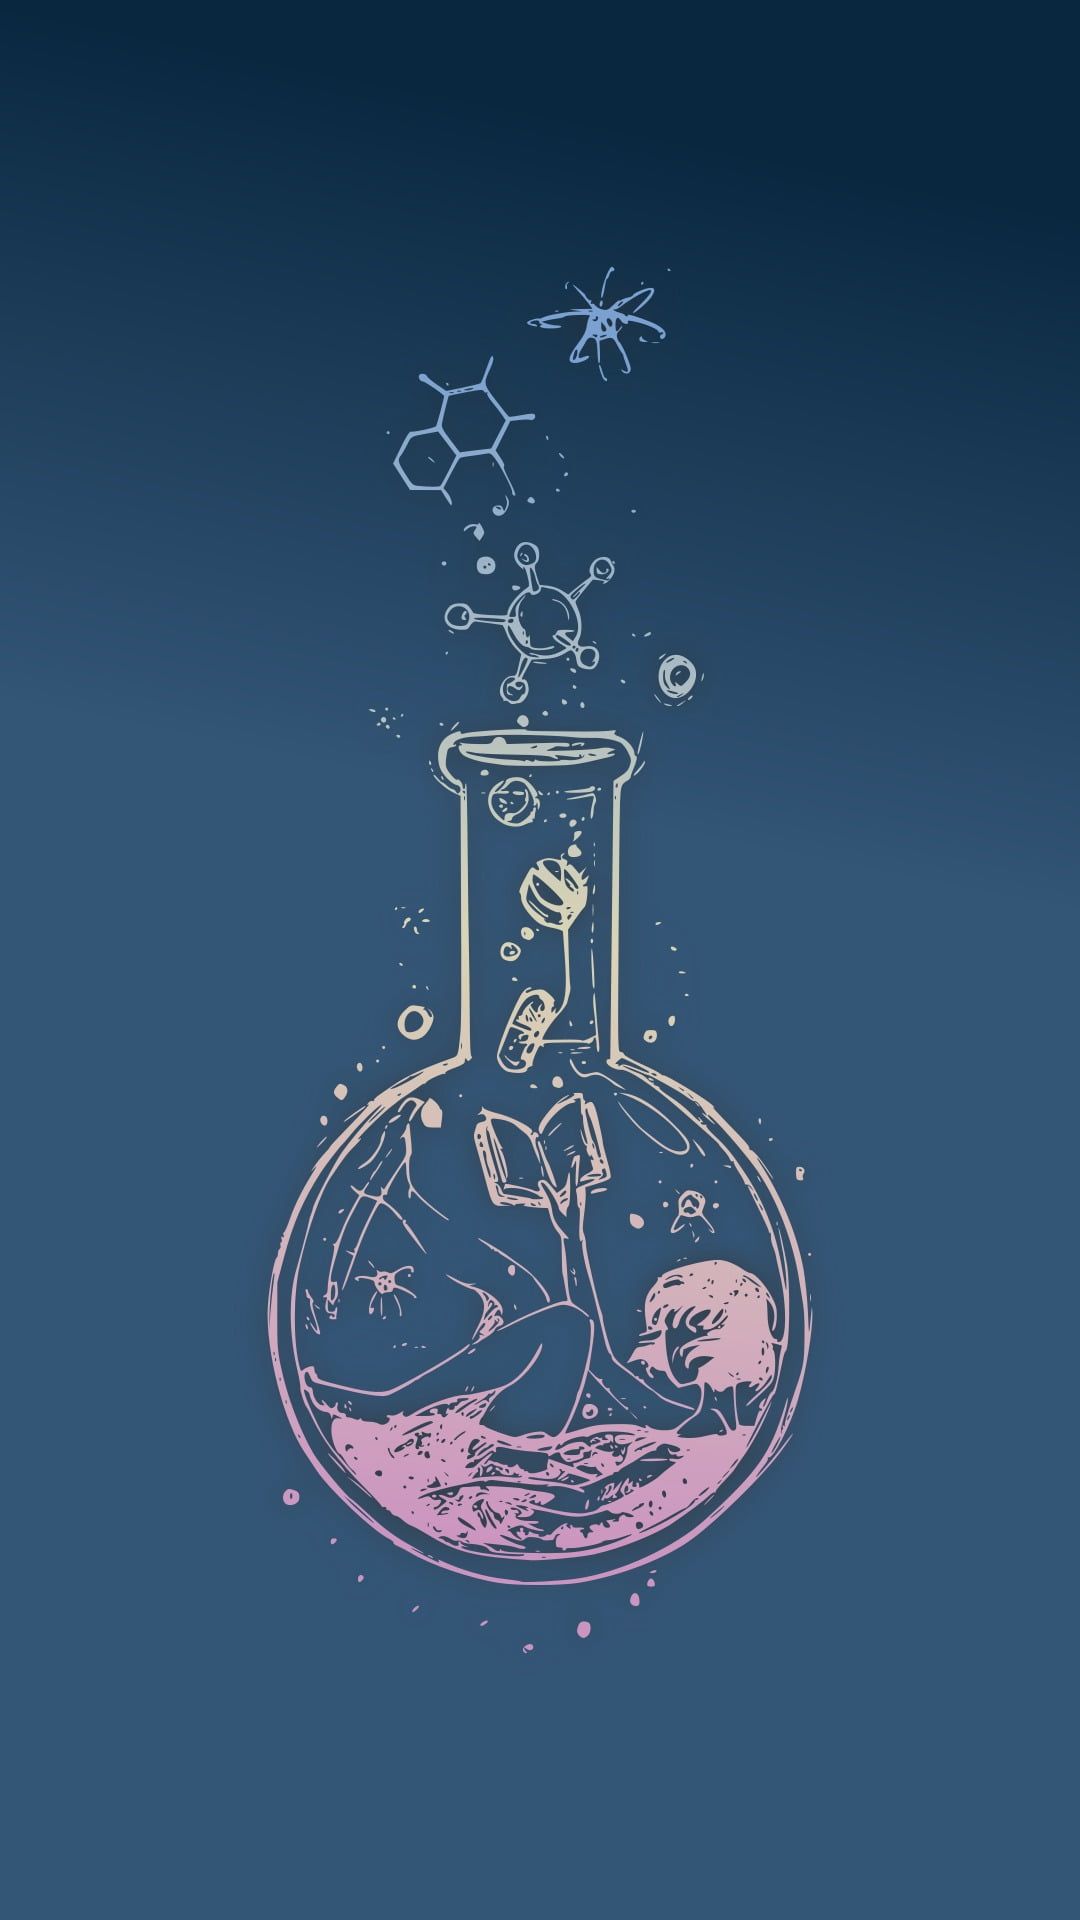 vase painting #science anime girls #chemistry P #wallpaper #hdwallpaper #desktop. Chemistry art, Music drawings, Art wallpaper